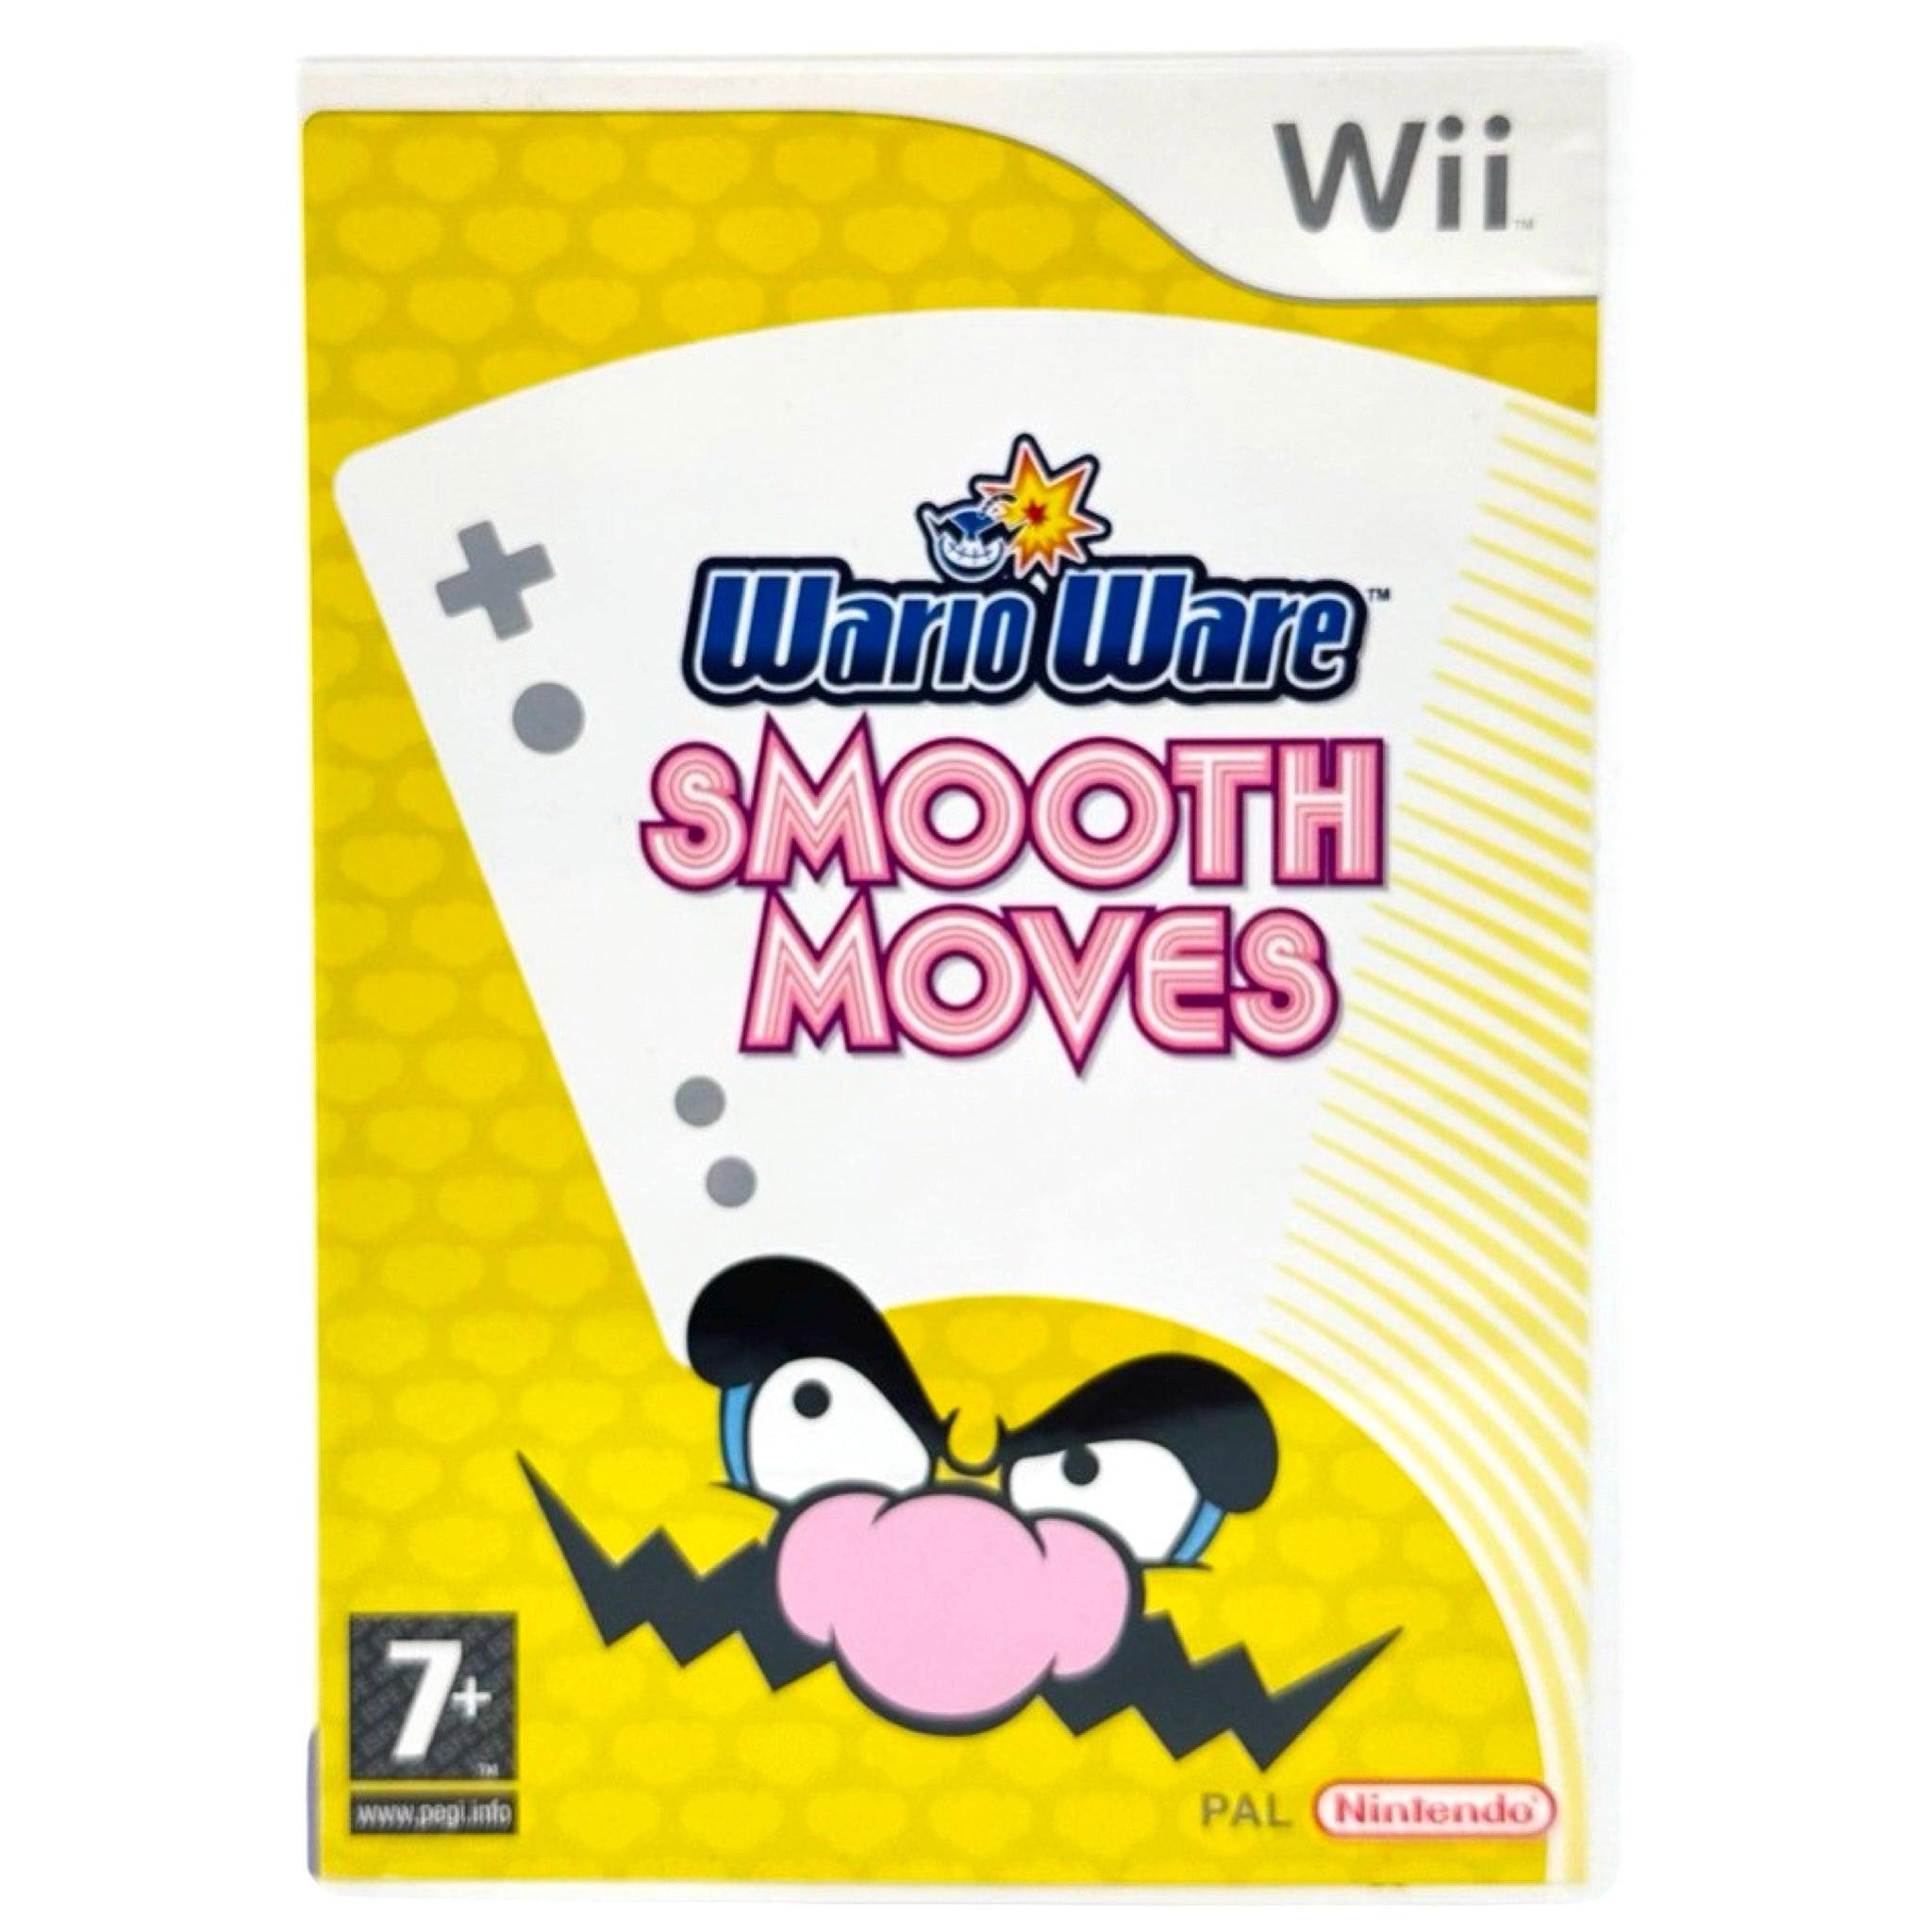 Wii: WarioWare: Smooth Moves - RetroGaming.no